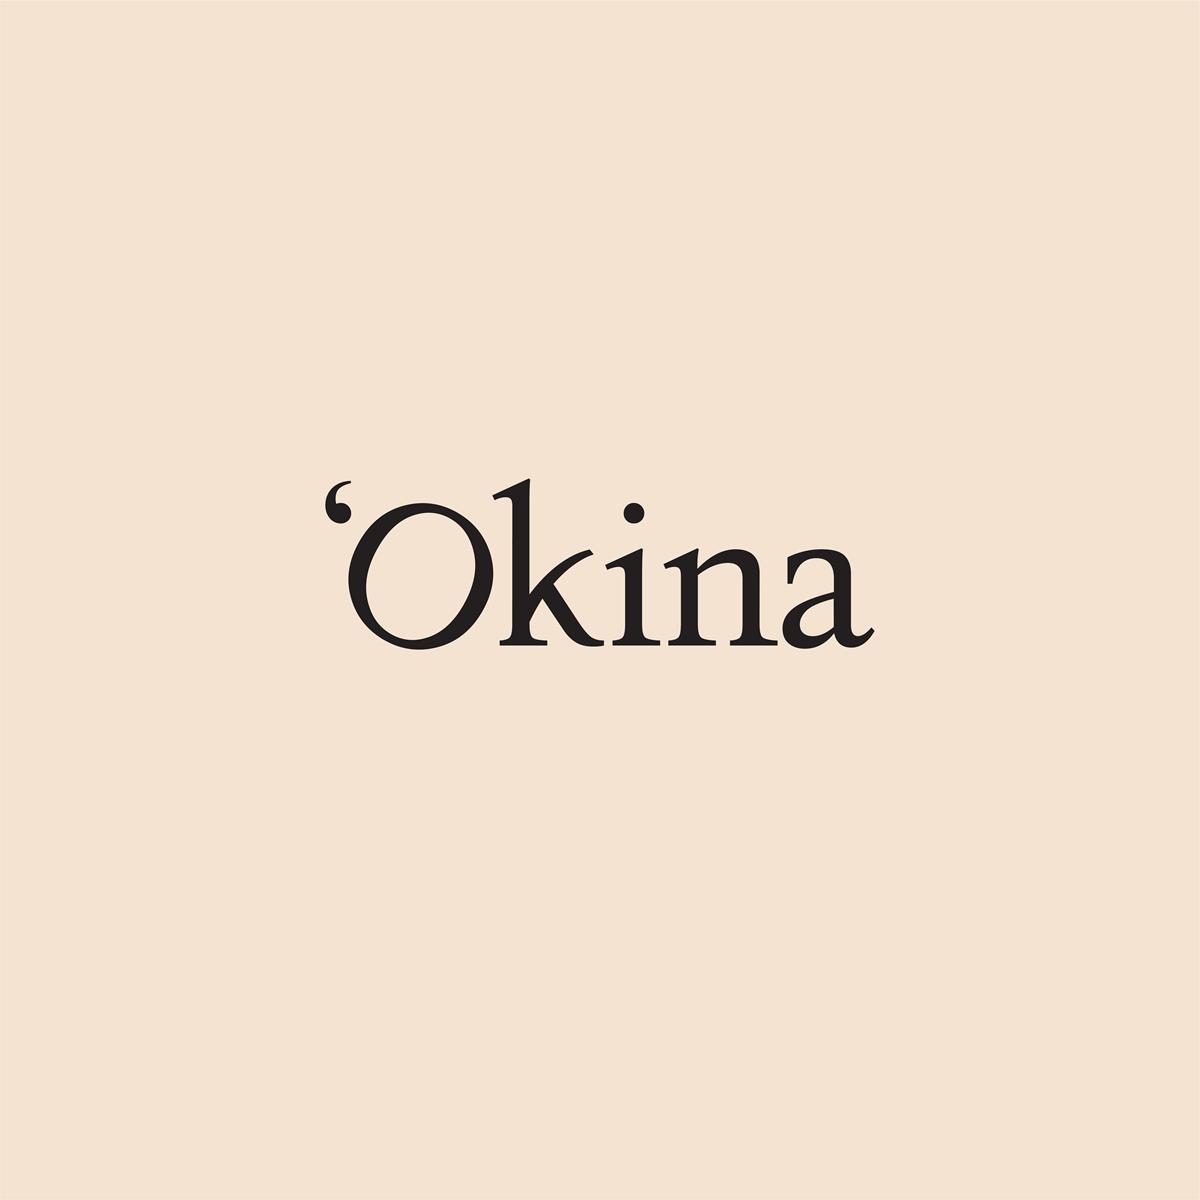 'Okina